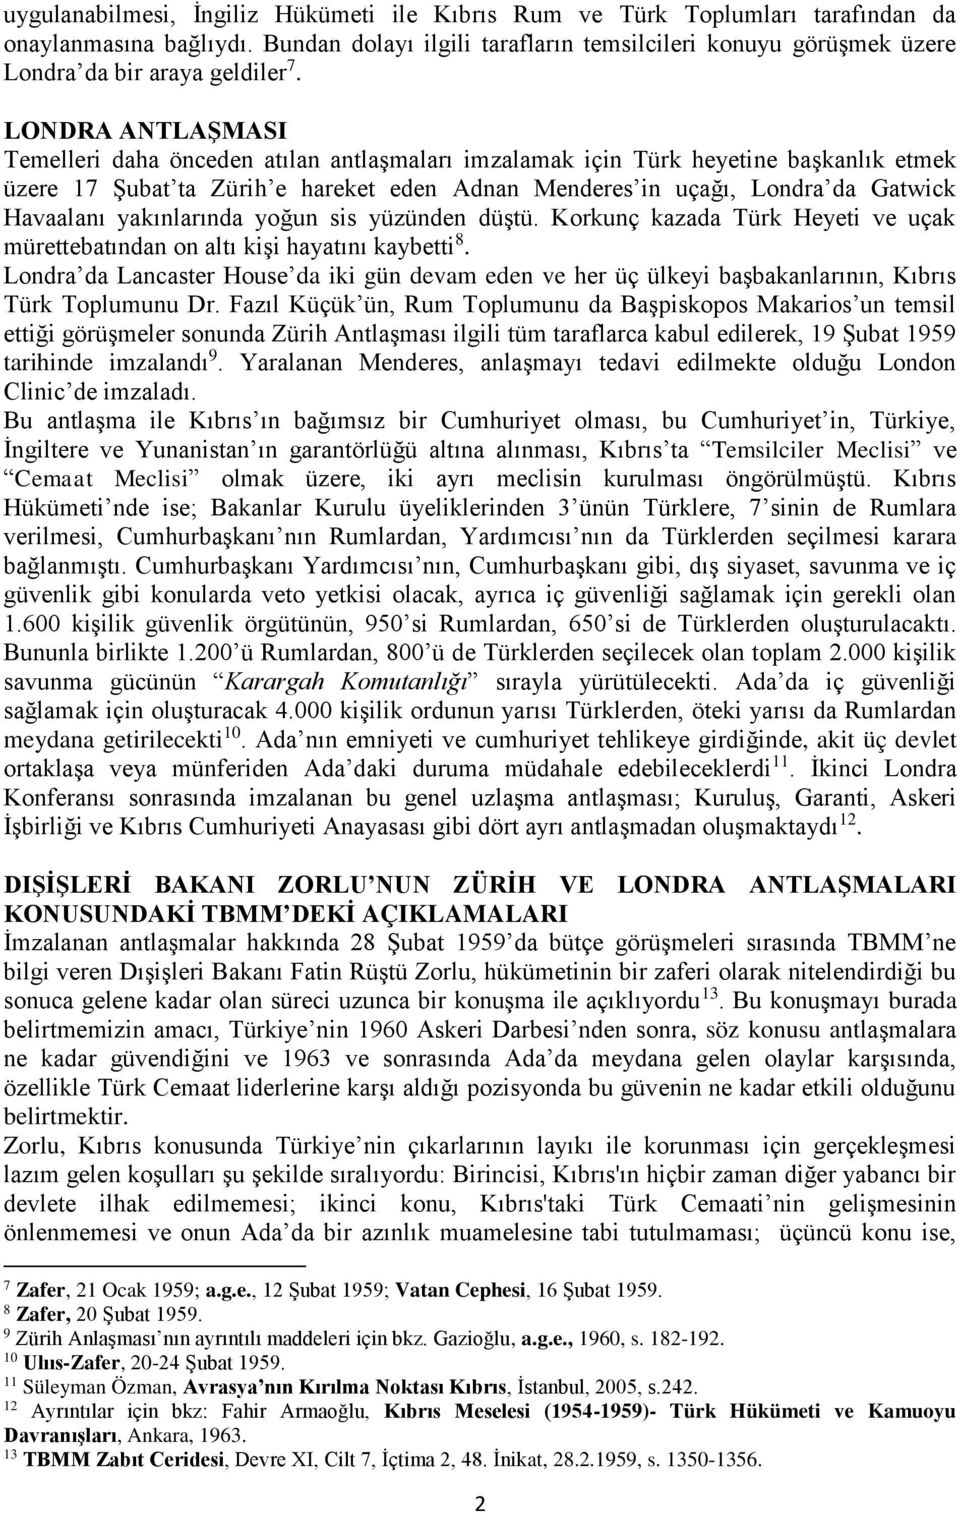 LONDRA ANTLAŞMASI Temelleri daha önceden atılan antlaşmaları imzalamak için Türk heyetine başkanlık etmek üzere 17 Şubat ta Zürih e hareket eden Adnan Menderes in uçağı, Londra da Gatwick Havaalanı